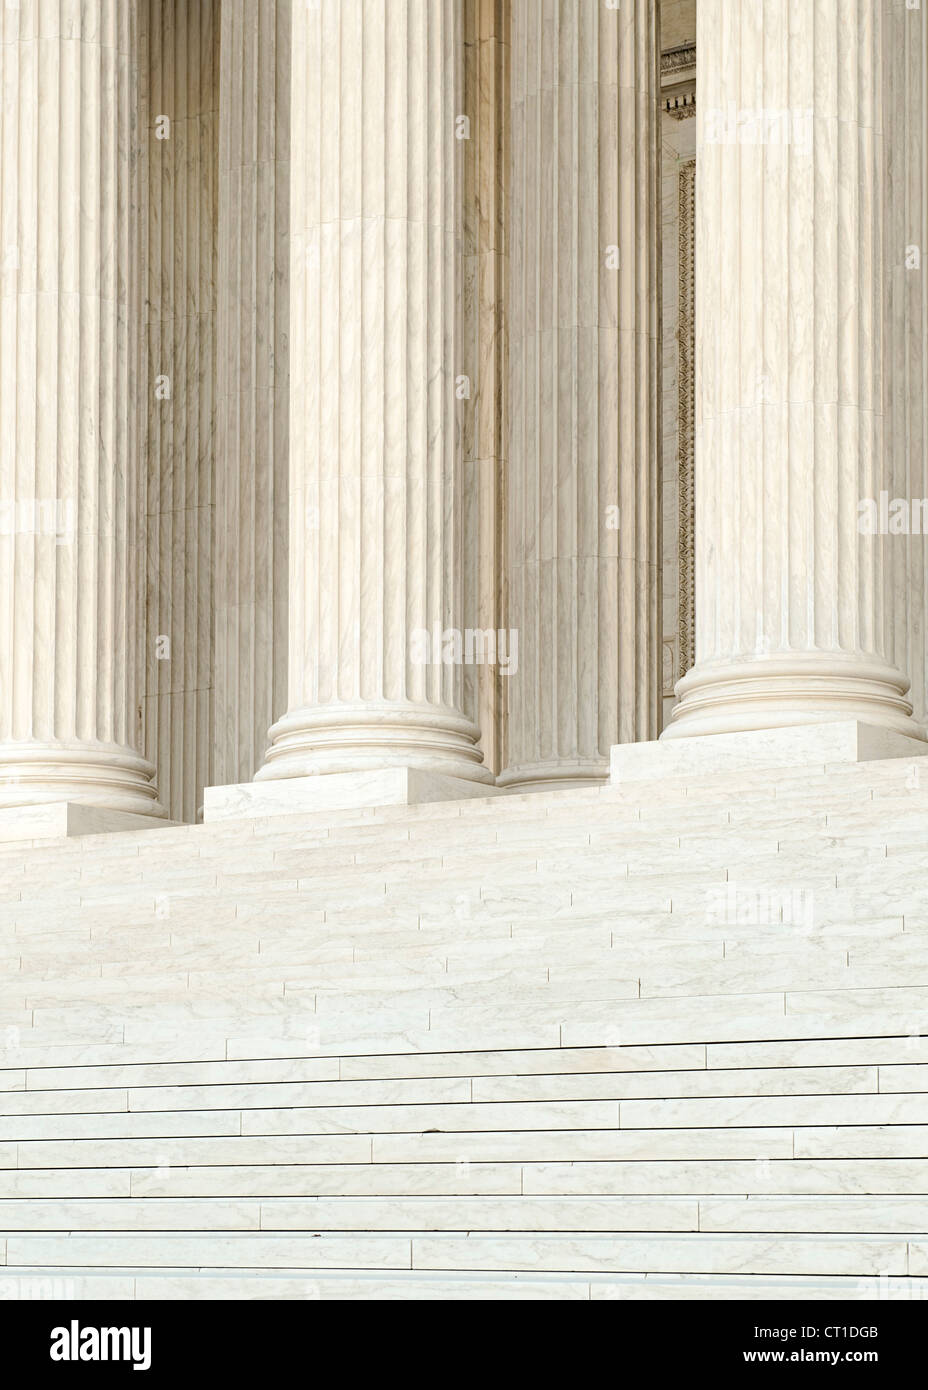 Le fasi e le colonne della Corte suprema degli Stati Uniti edificio in Washington DC, Stati Uniti d'America. Foto Stock